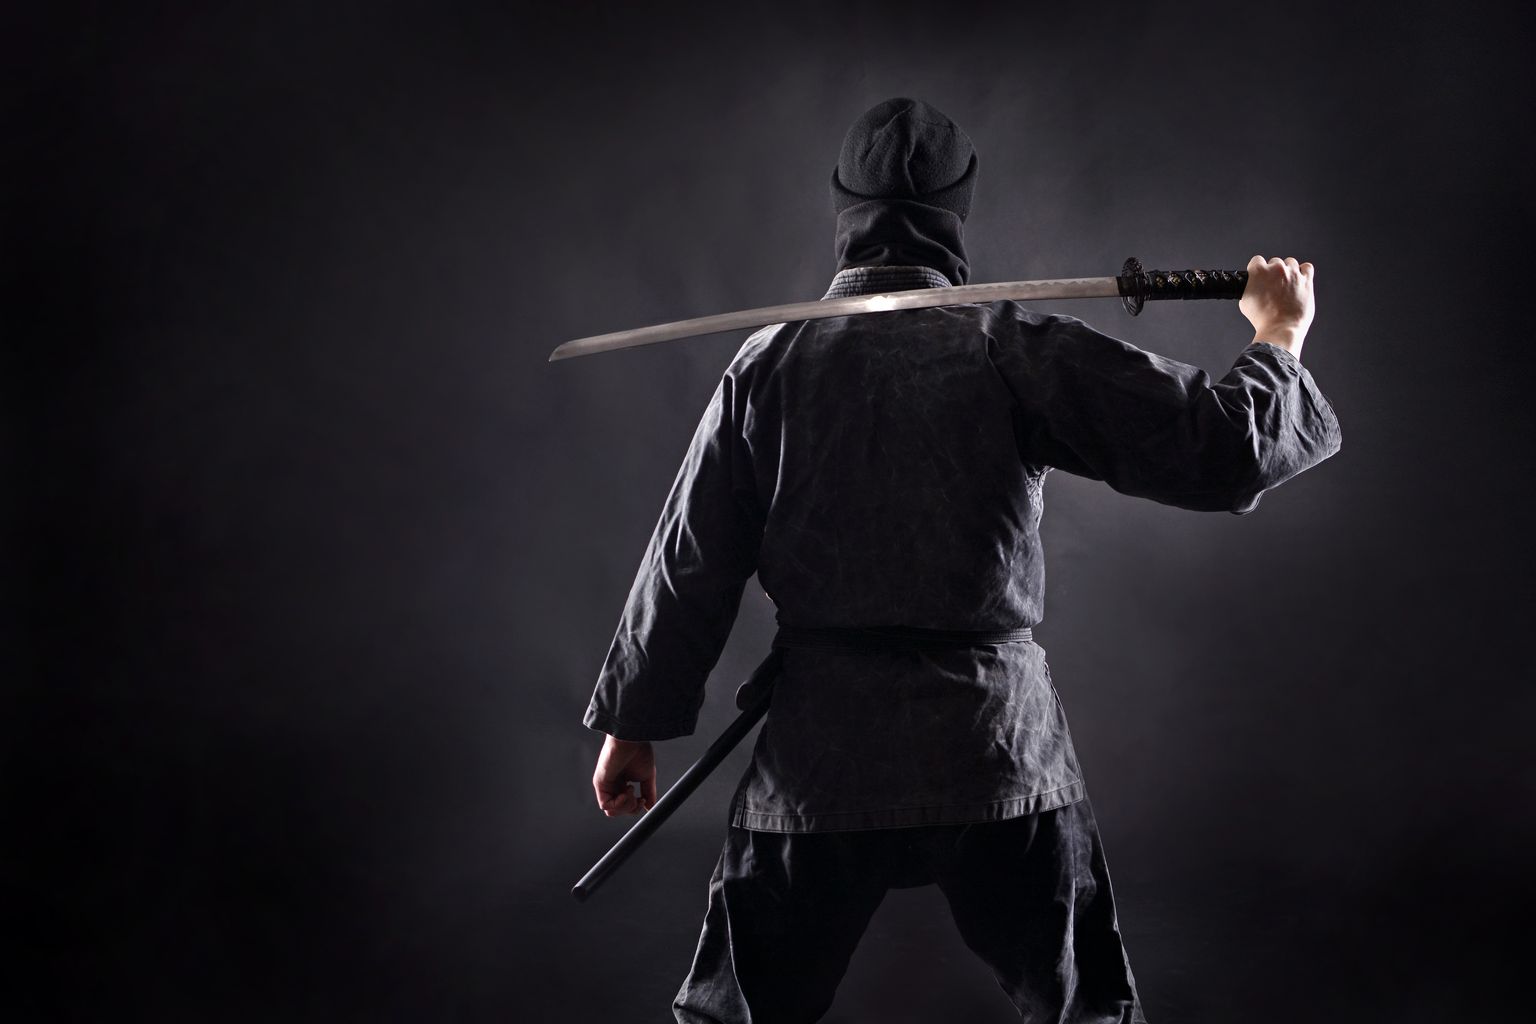 Jaapani ninja'ks kehastunu. Pilt on illustreeriv